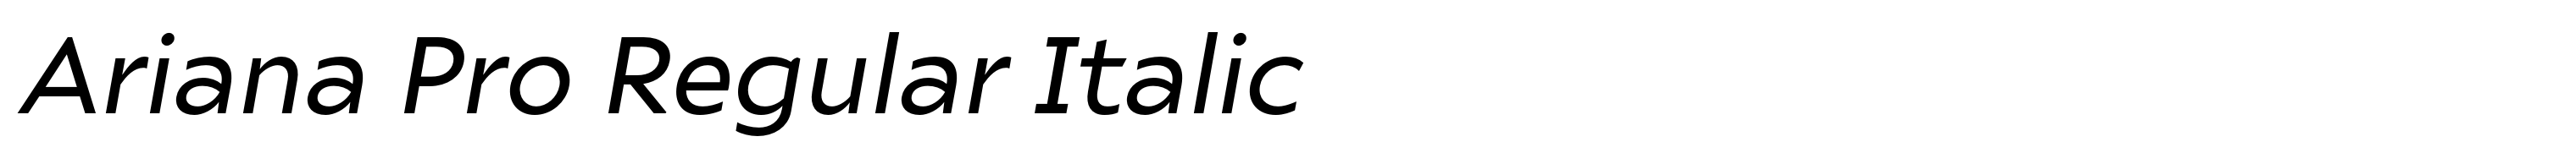 Ariana Pro Regular Italic